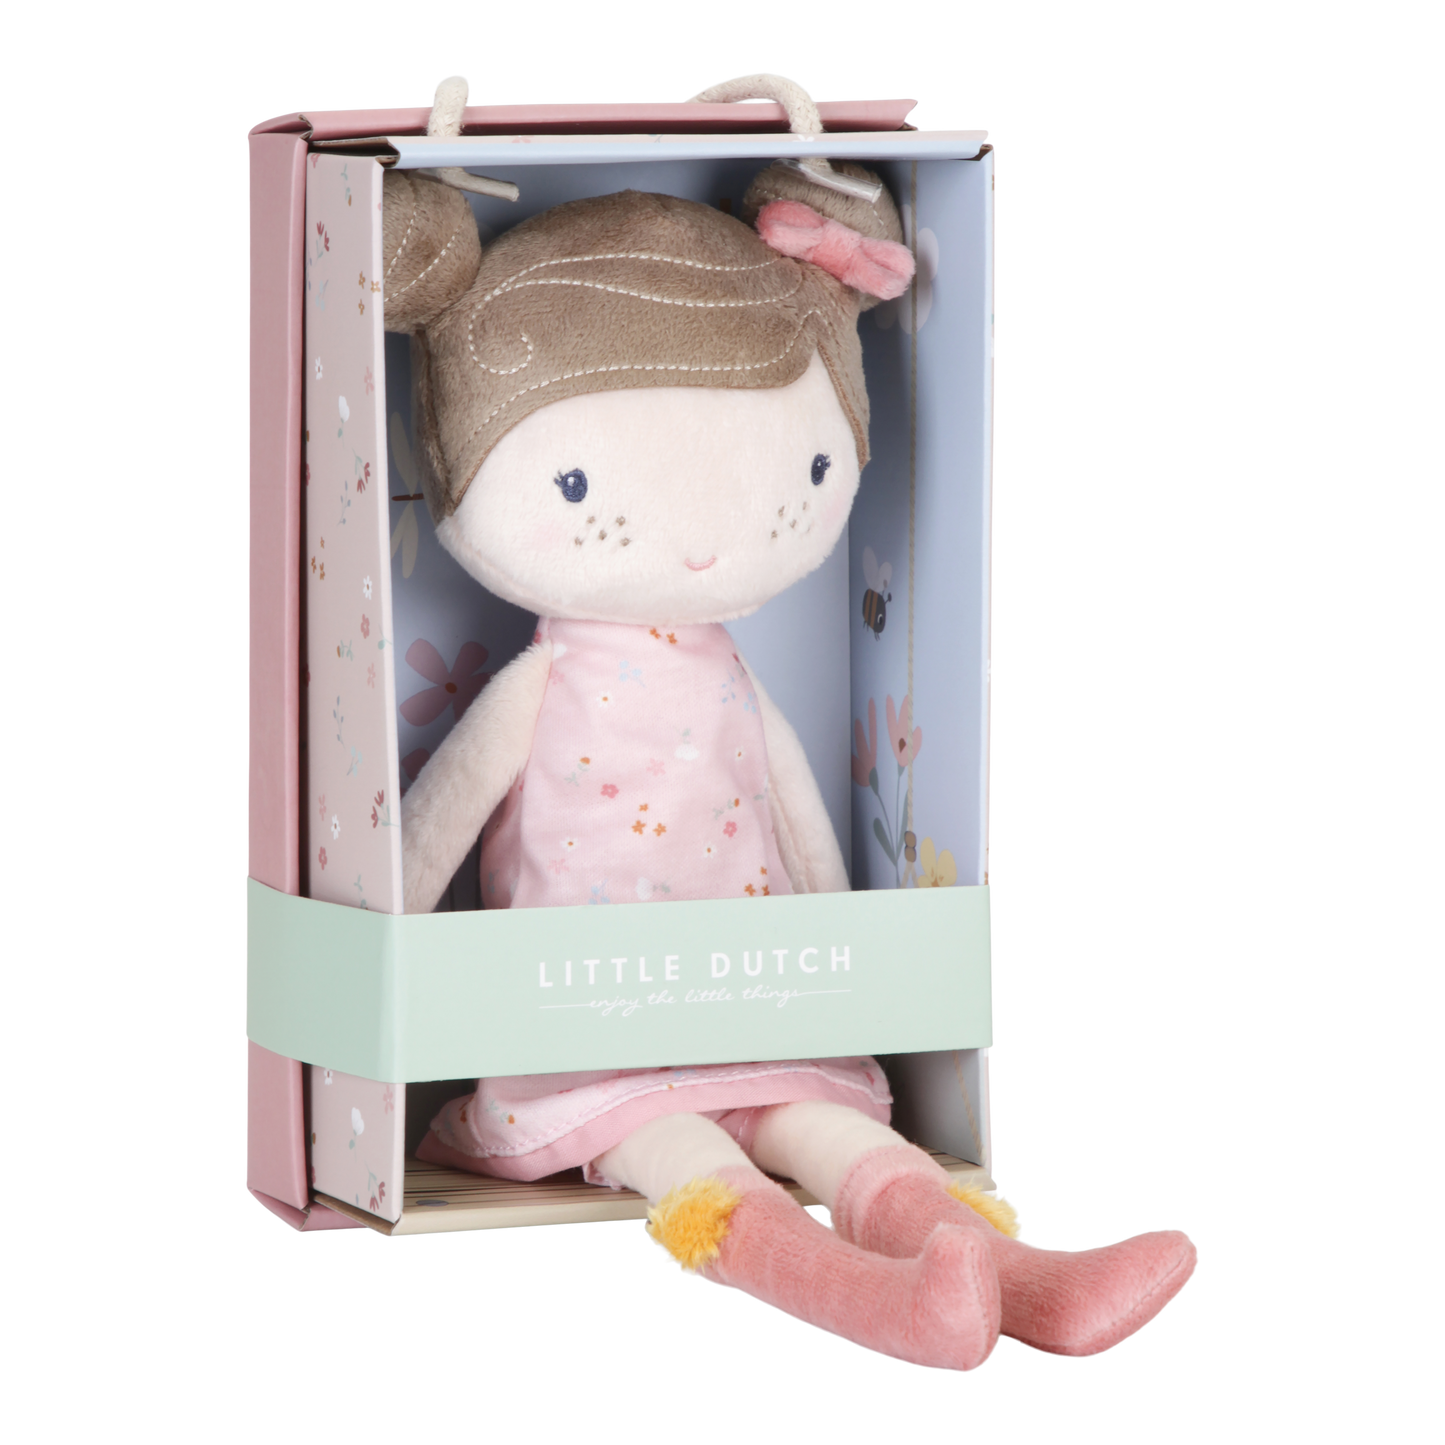 Cuddle Doll Rosa 35cm